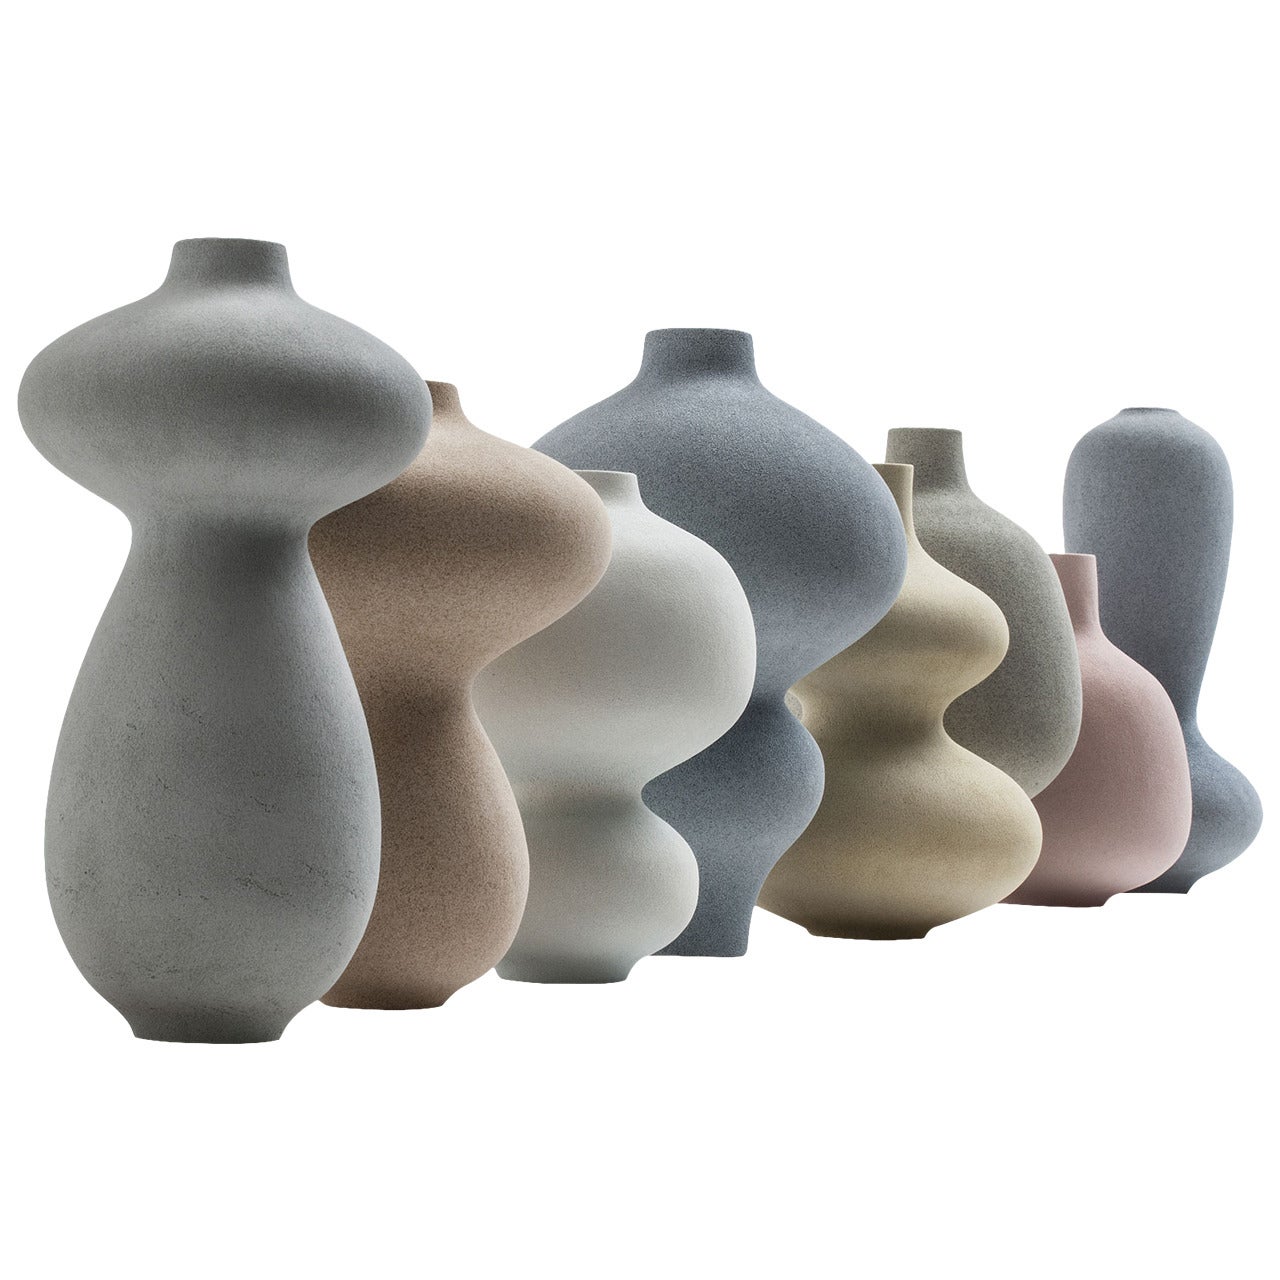 Group of Vases by Turi Heisselberg Pedersen